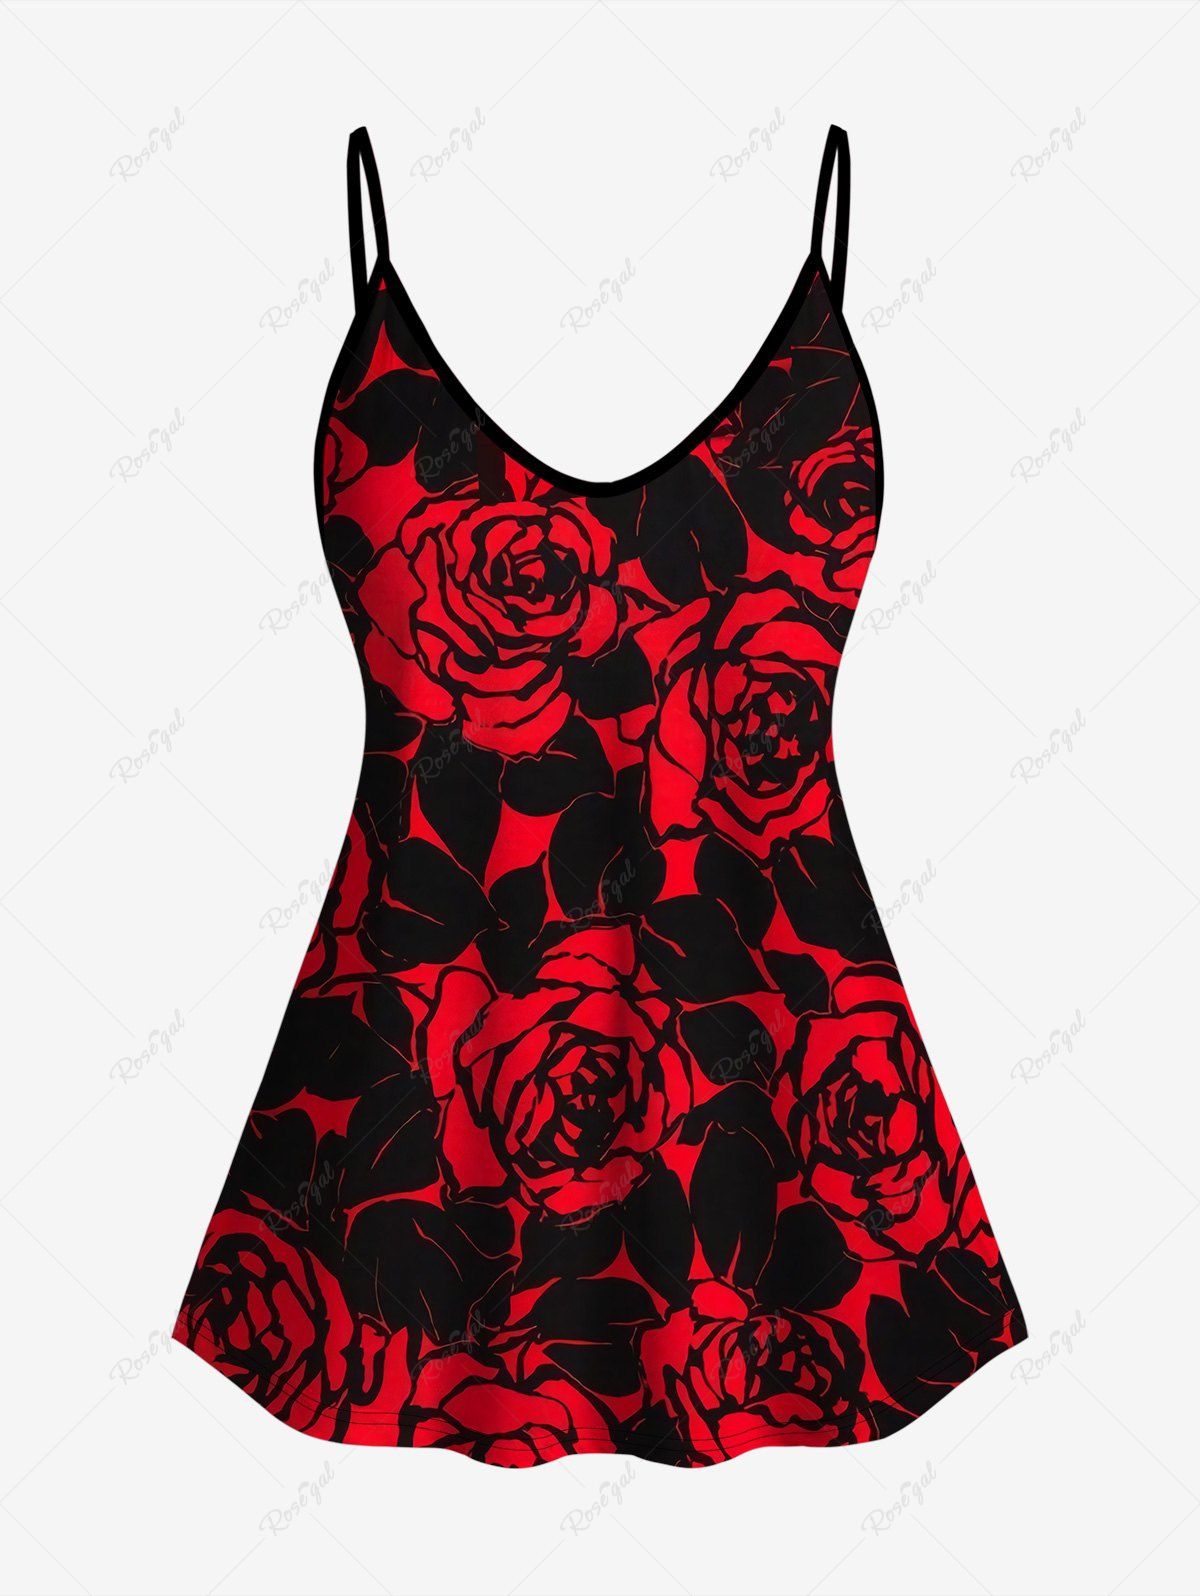 Hot Plus Size Rose Print Cami Top (Adjustable Shoulder Strap)  